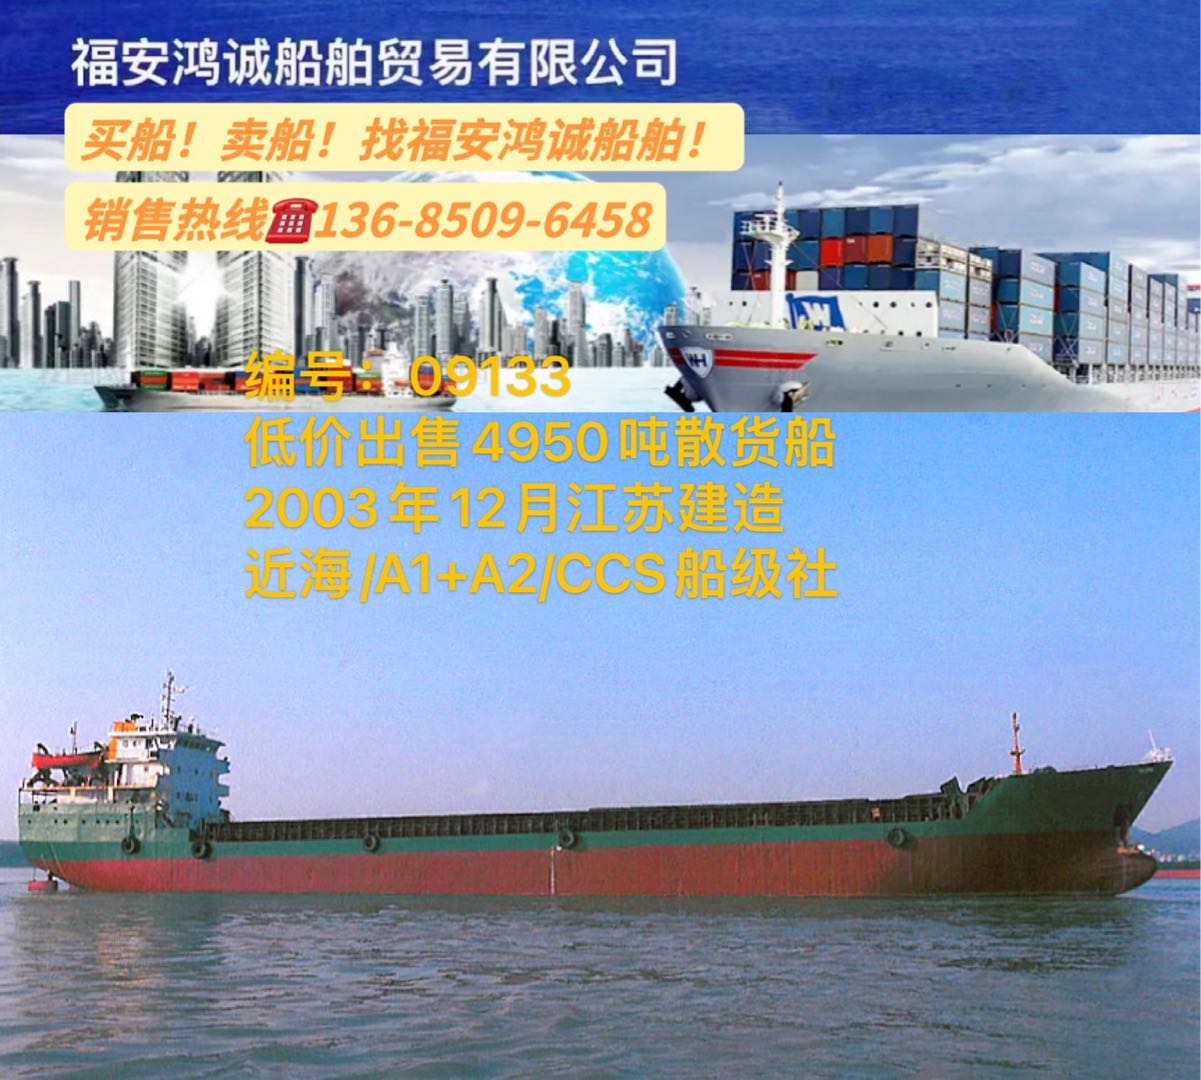 低价出售03年4950吨散货船